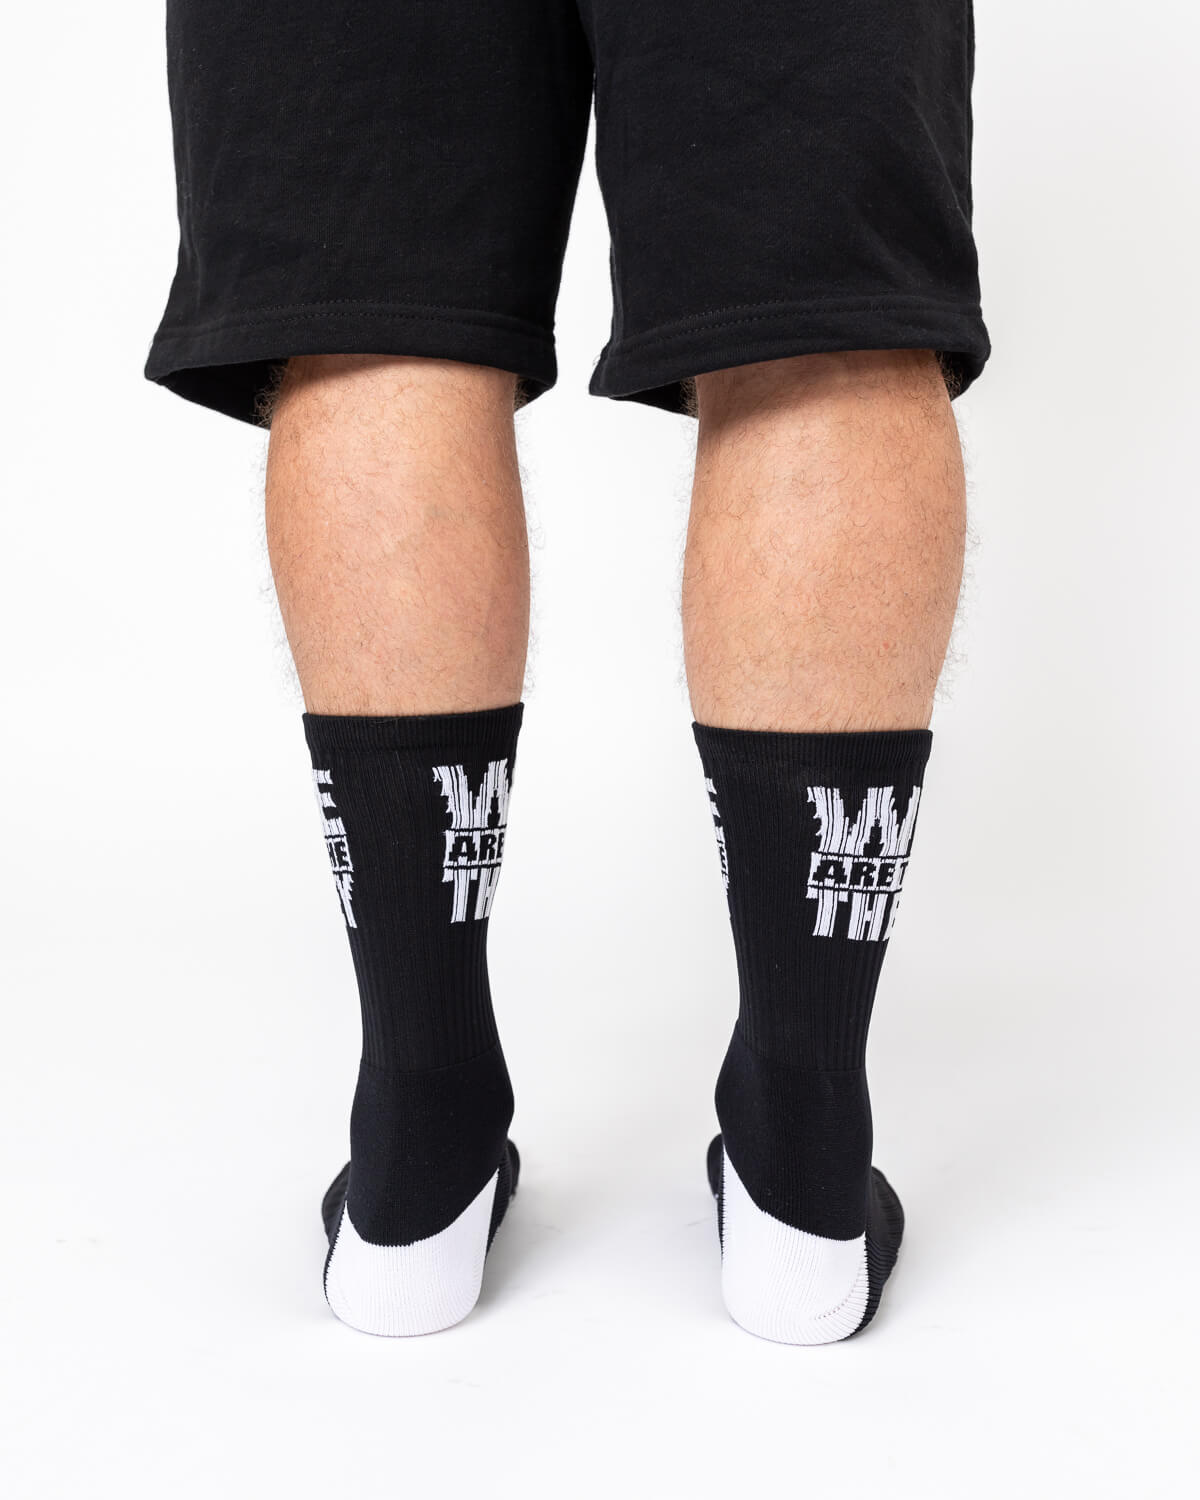 WATT Word Socks - Black And White